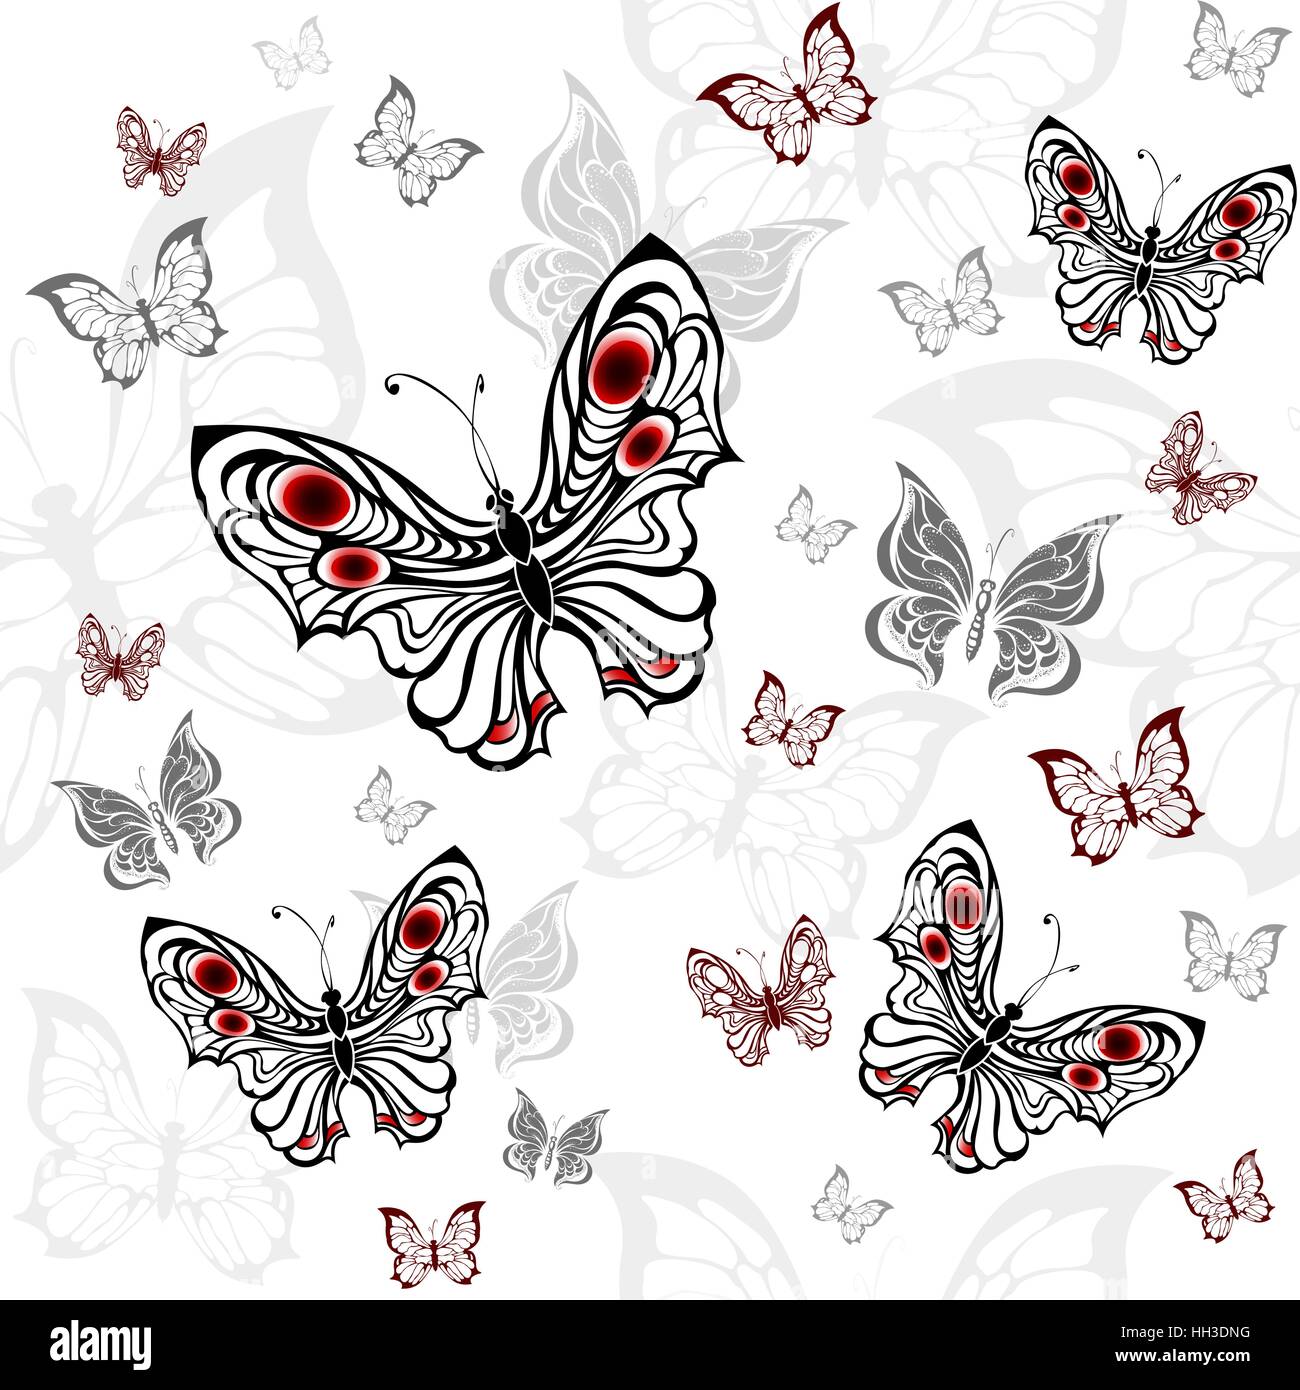 nahtlose Muster von grauen und roten Schmetterlingen auf einem weißen Hintergrund. Stock Vektor